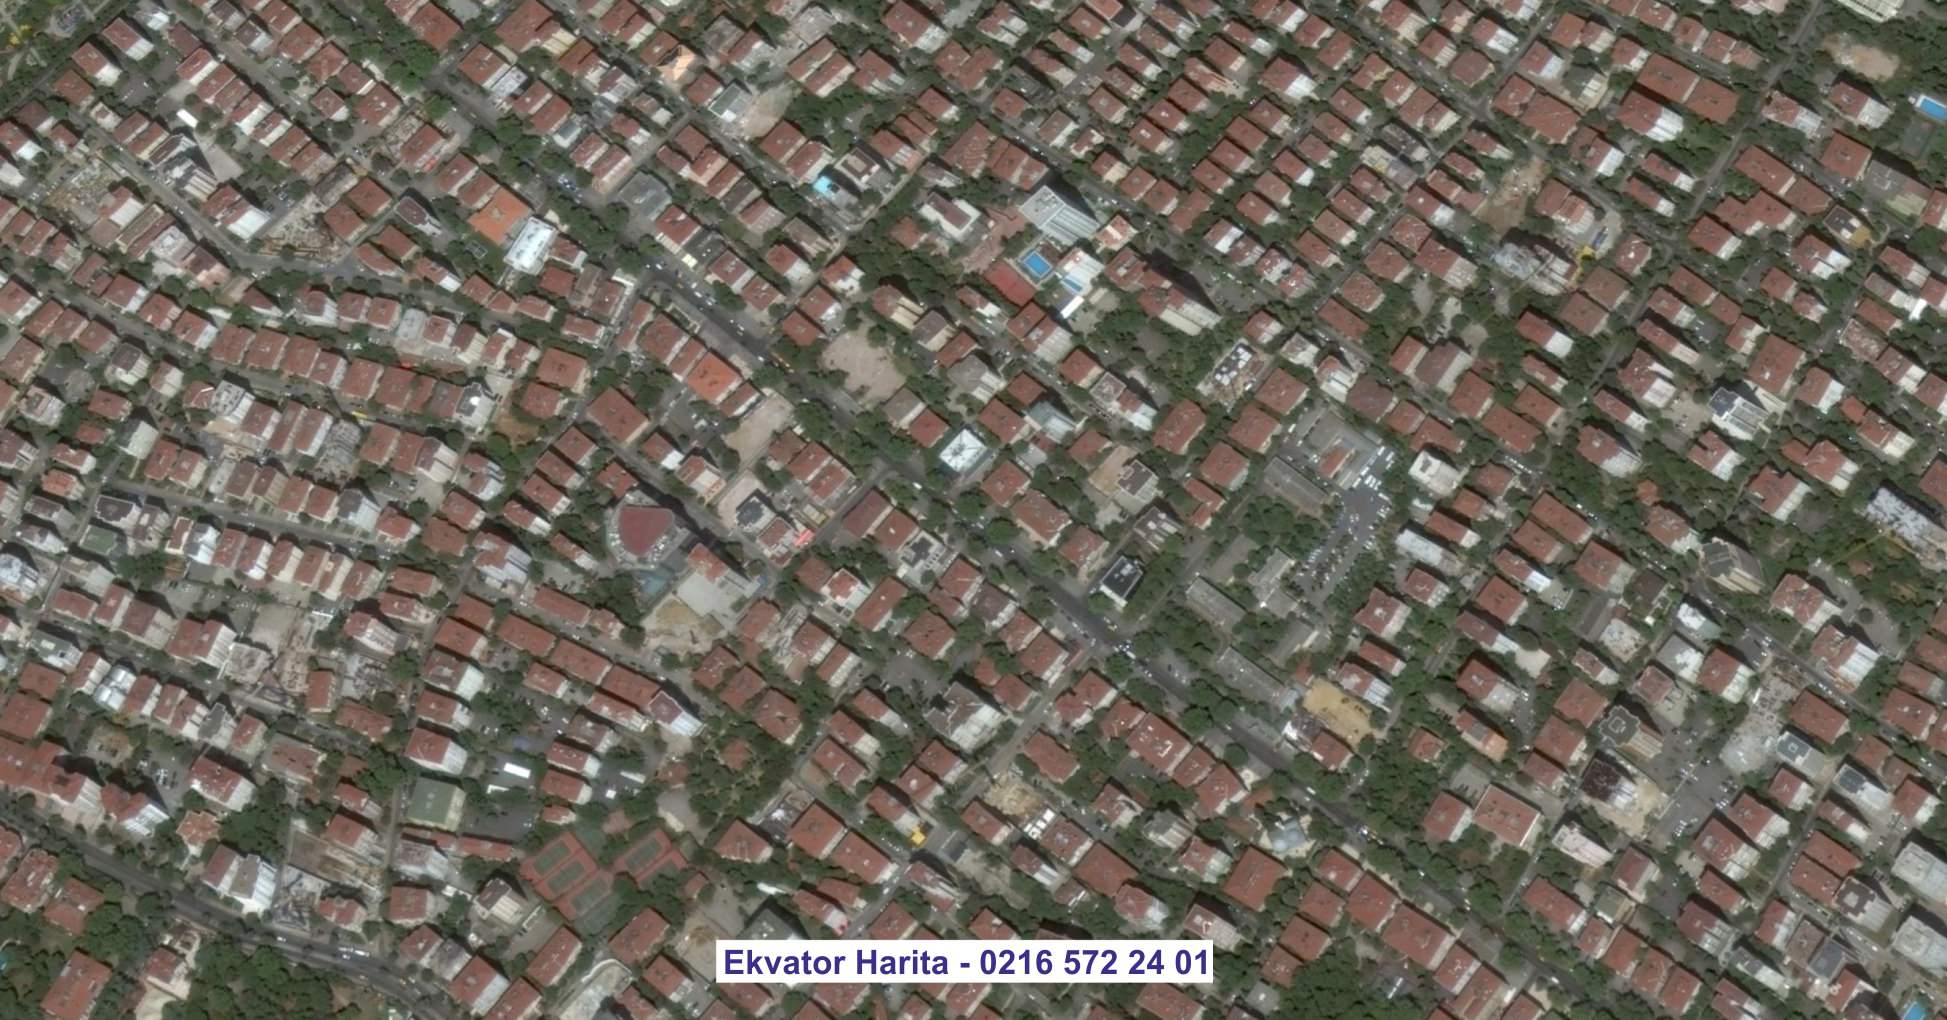 Iğdır Uydu Görüntüsü Örnek Fotoğrafı